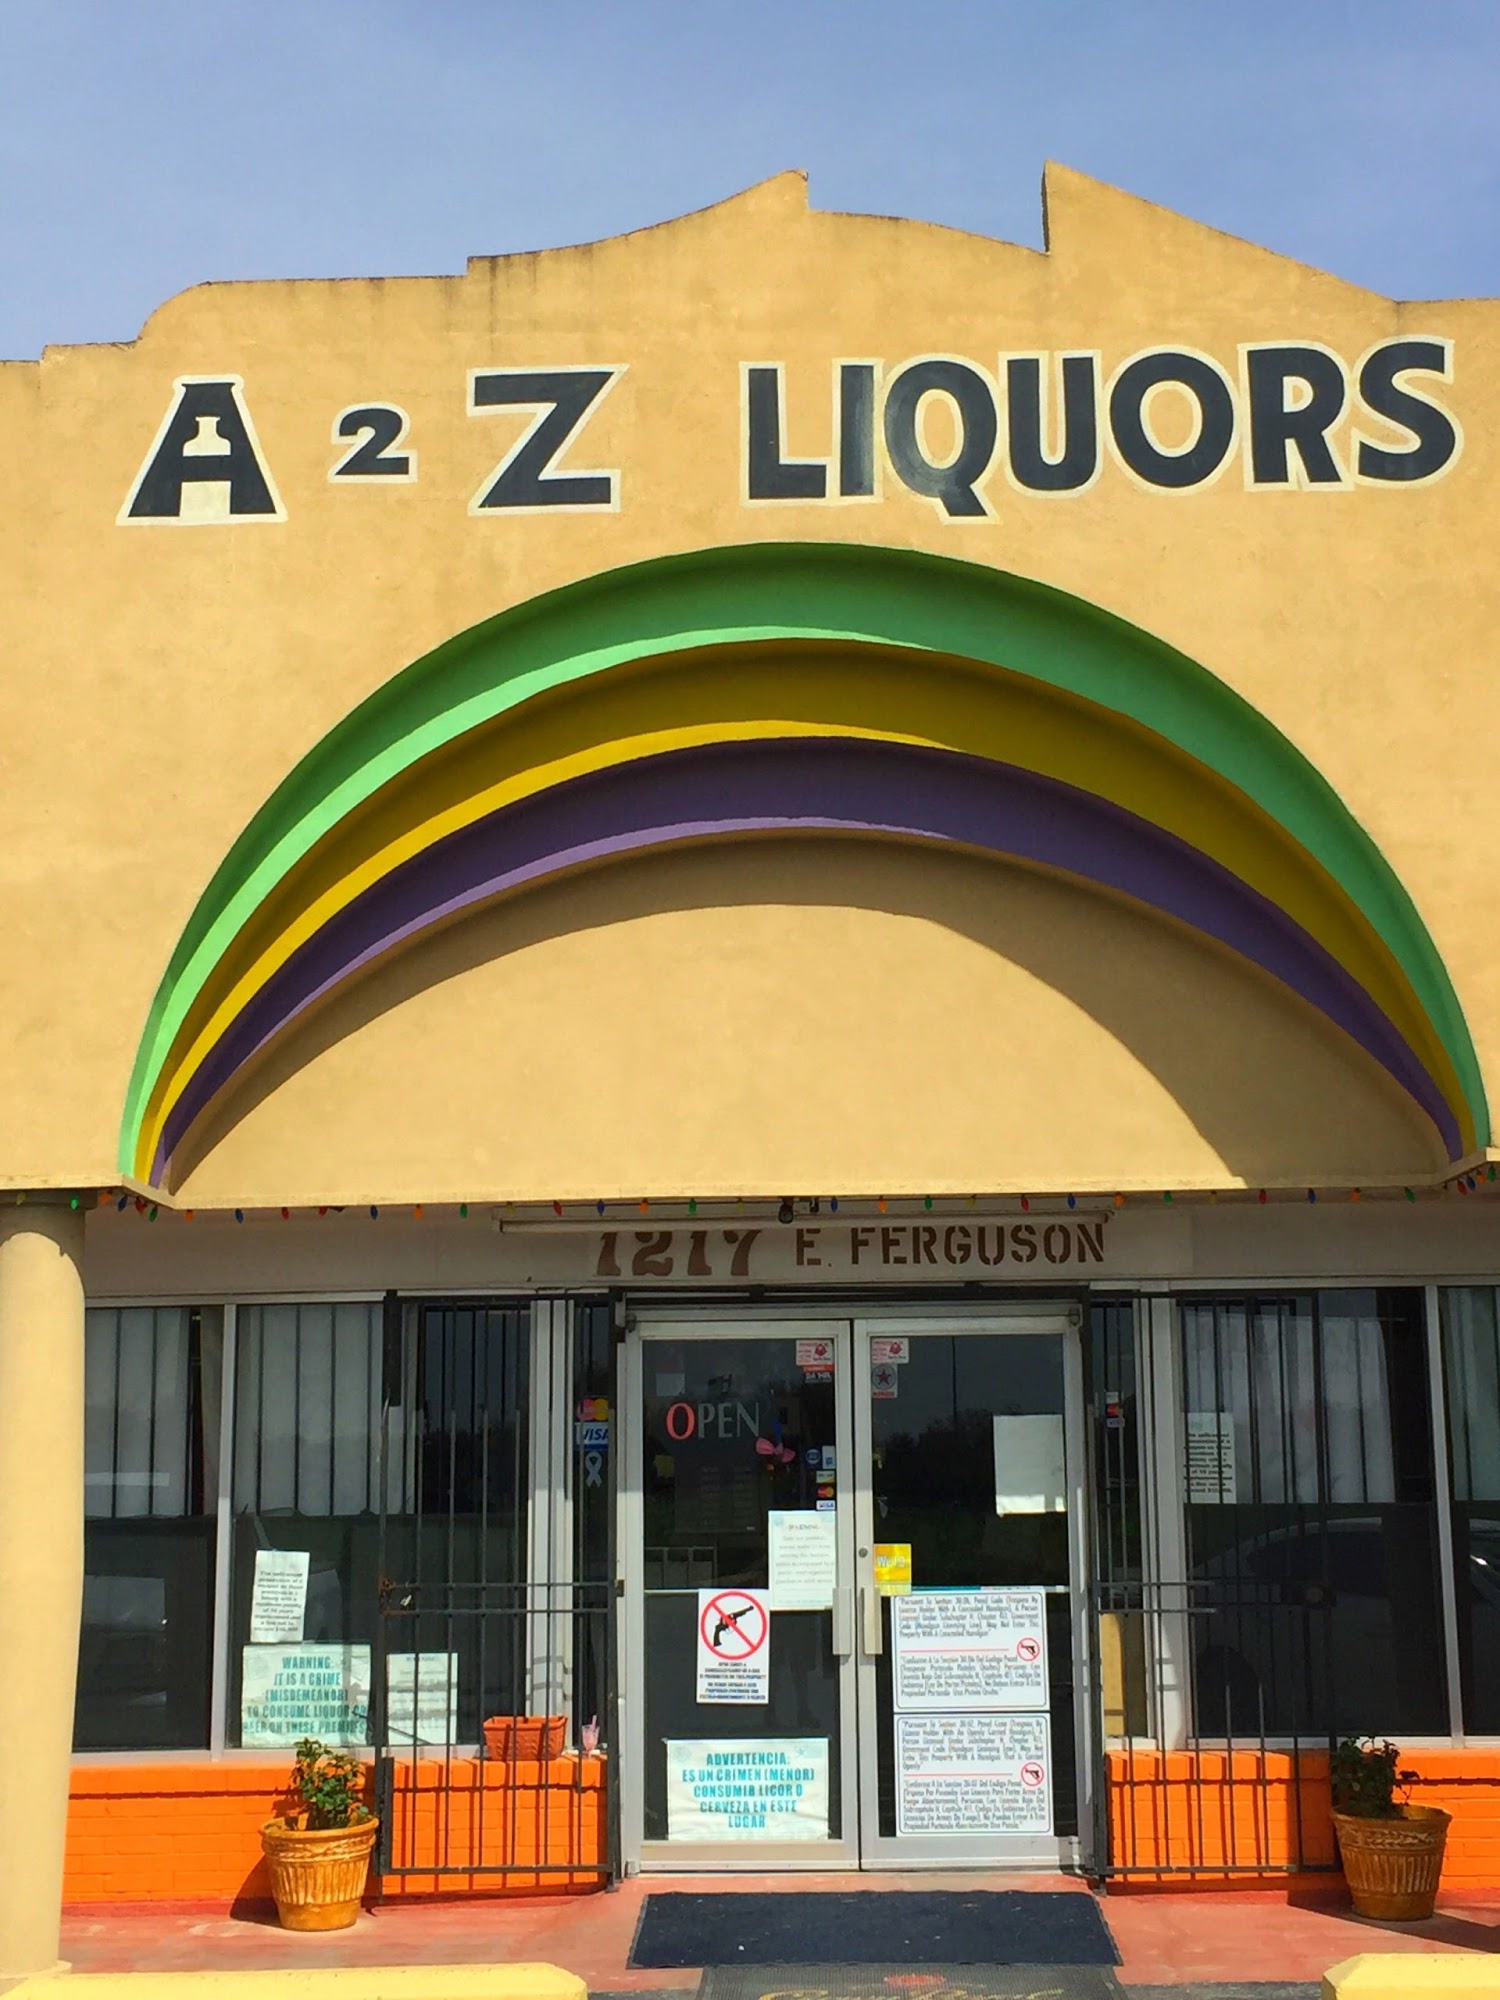 A2Z Liquors